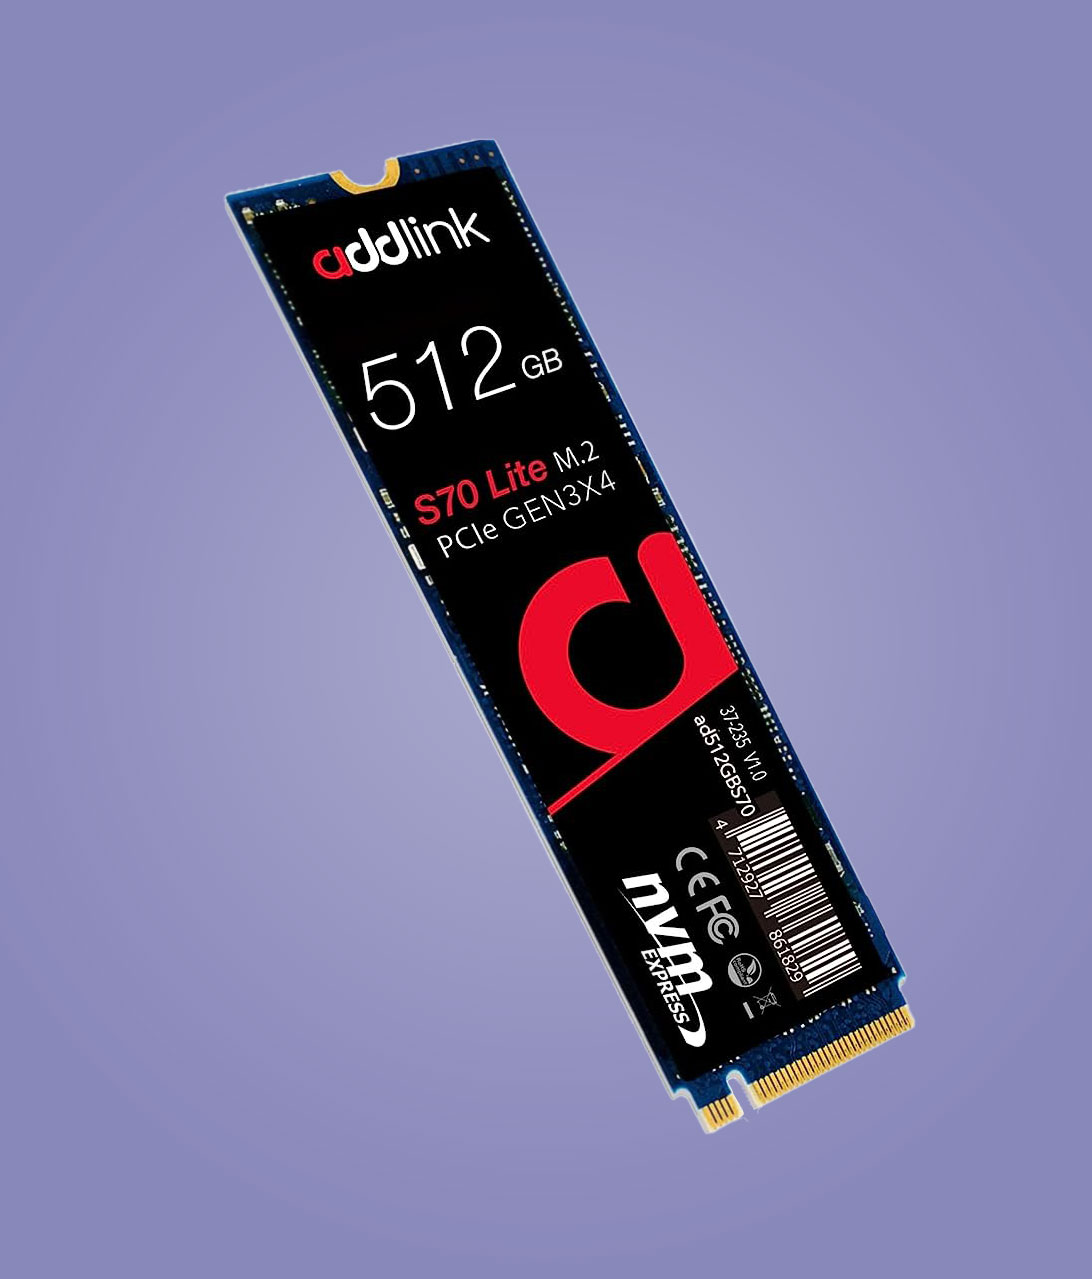 حافظه SSD اینترنال ادلینک Addlink S70 Lite M.2 2280 ظرفیت 512GB